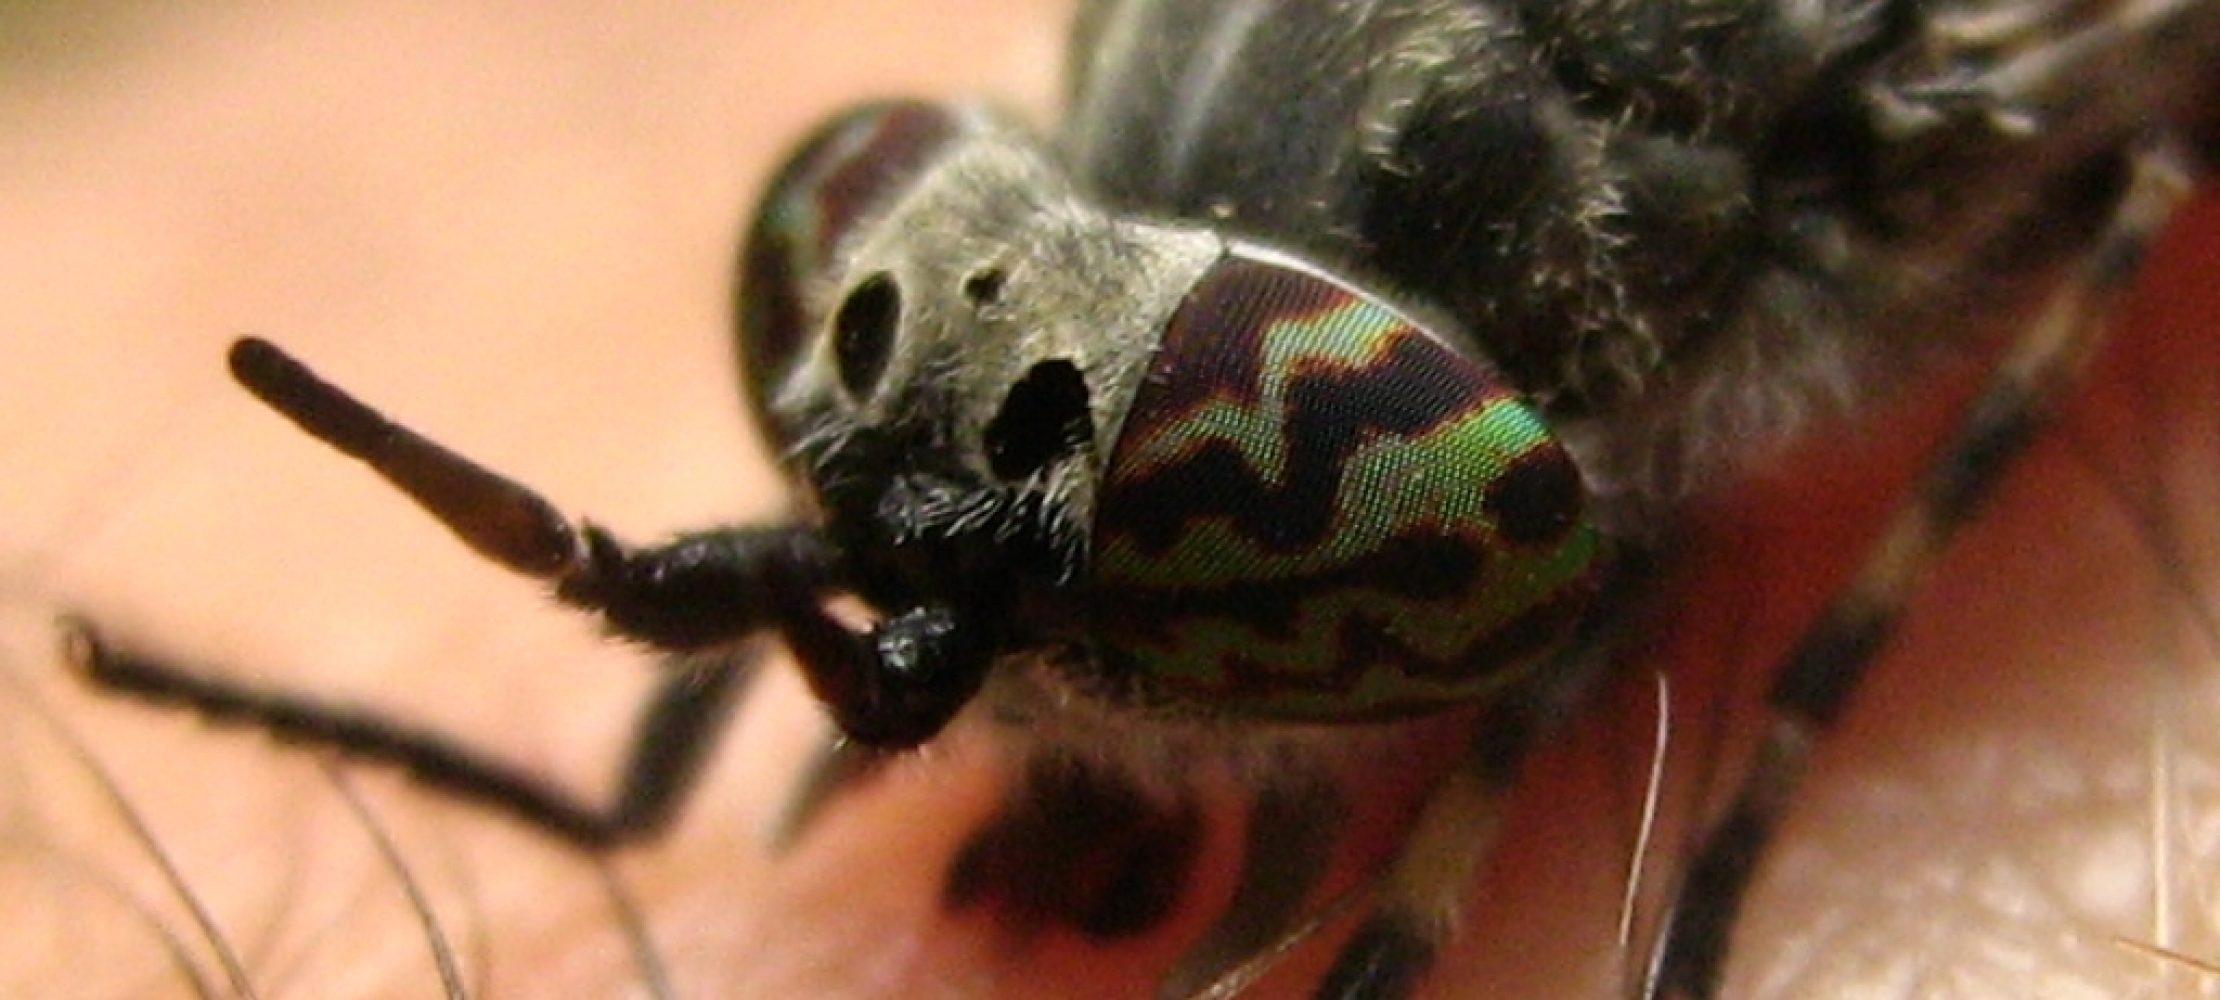 Warum stechen Insekten und was kann man dagegen tun?